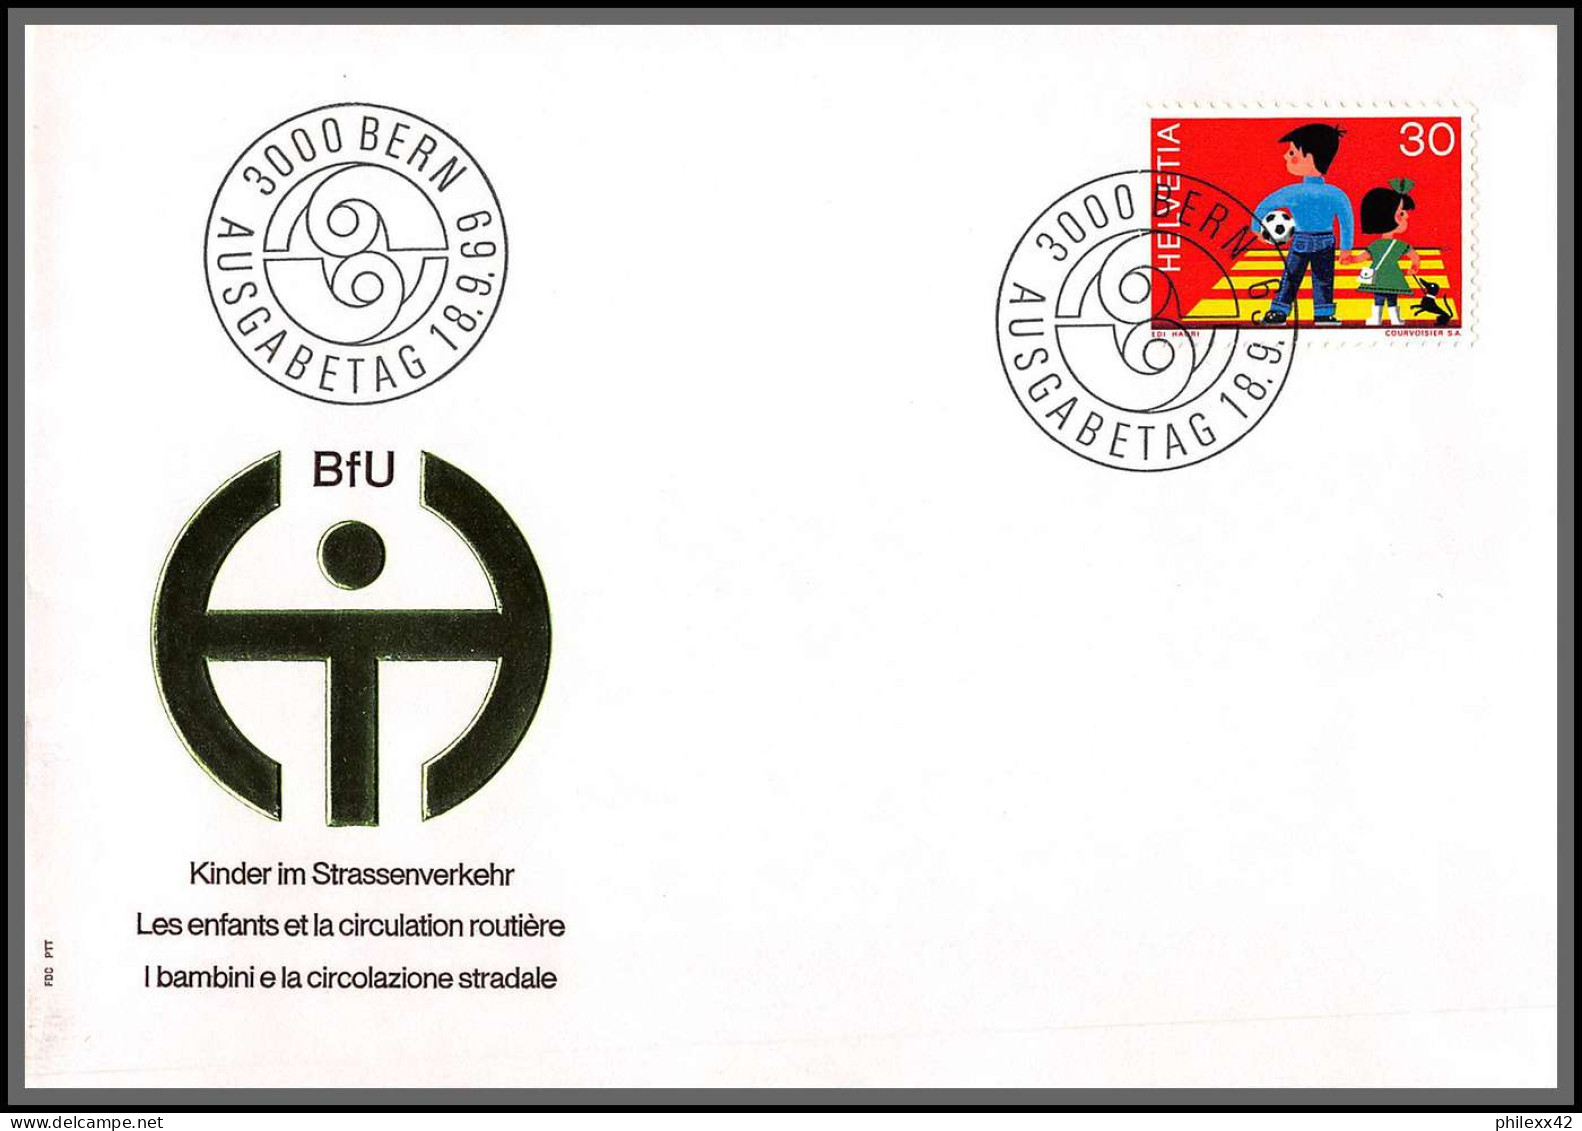 95949- lot de 19 lettres covers enveloppes de l'année 2000/2021 divers affranchissements suisse